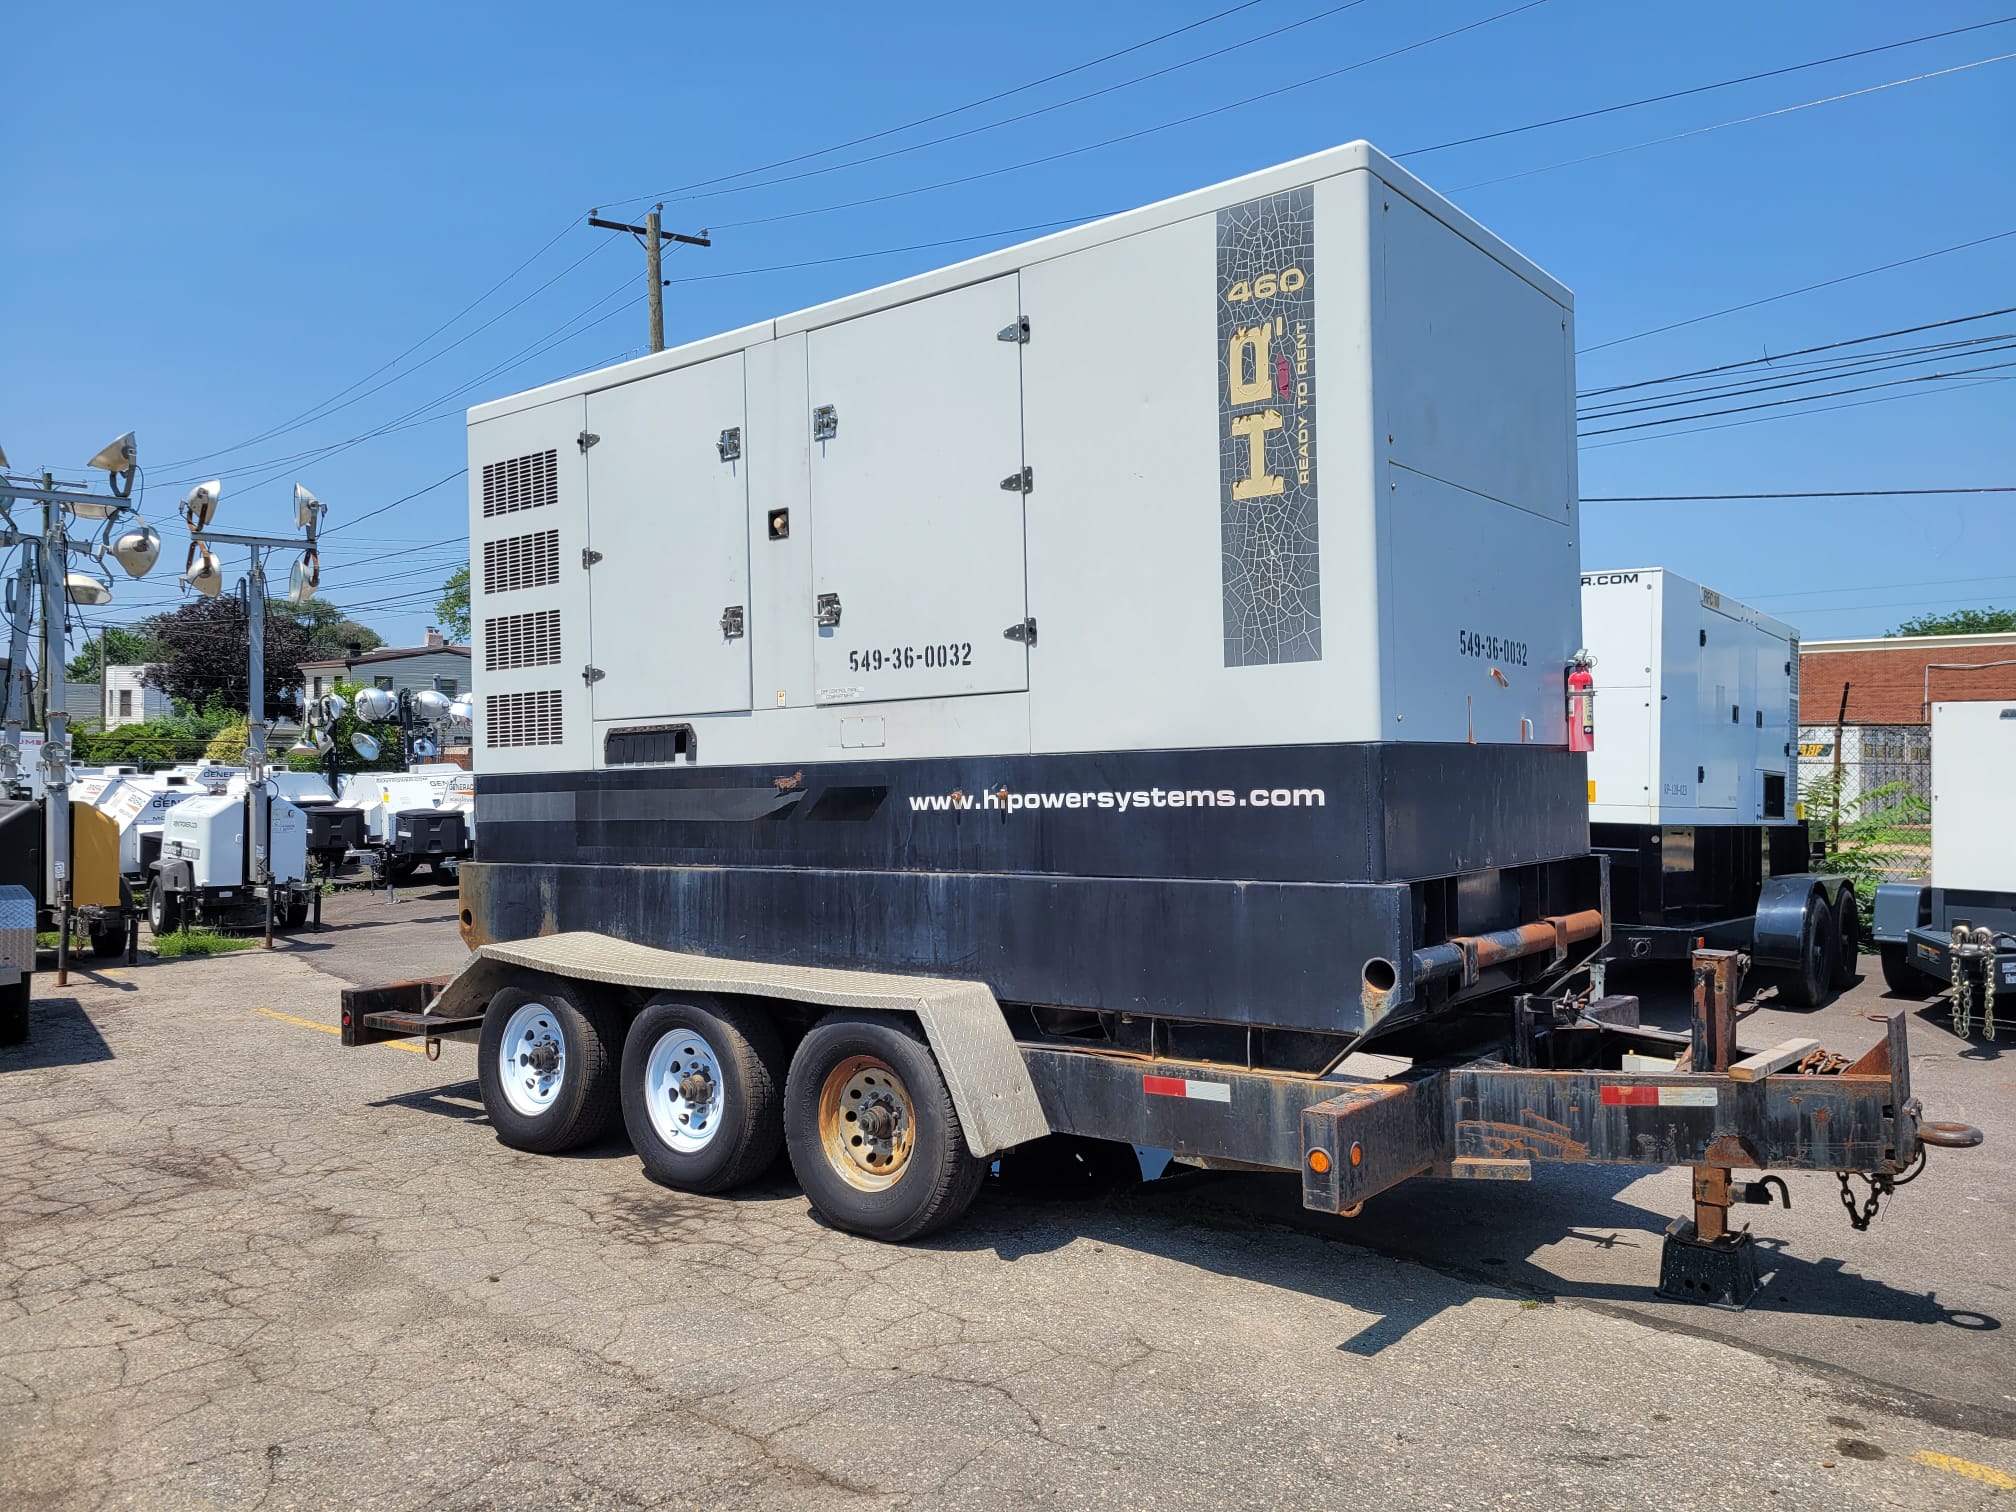 Used 369 kW HIPOWER HRJW-460 T6 Portable Diesel Generator – EPA Tier 3